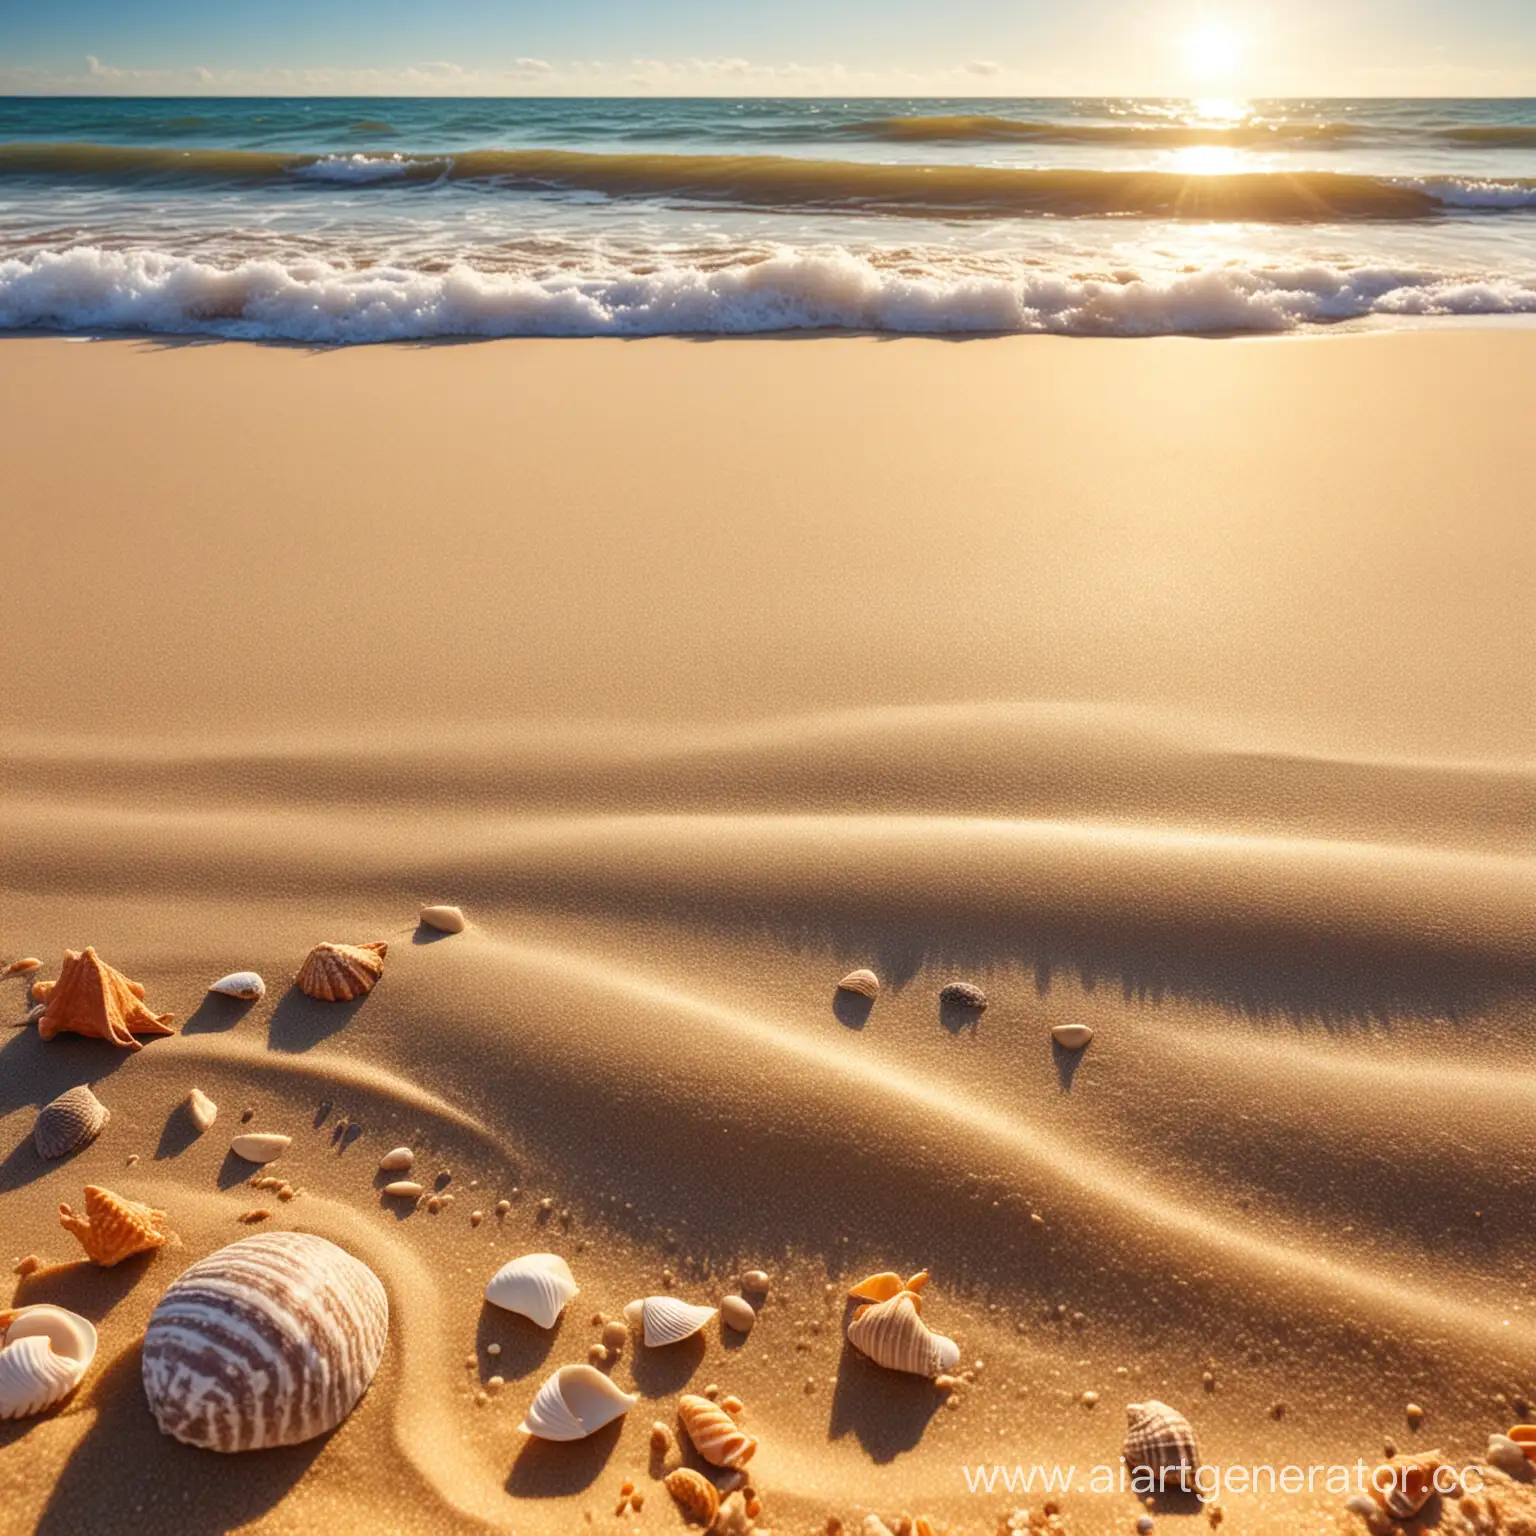 яркая сочная картинка песок на переднем плане с ракушками, вдали море ,солнца лучи